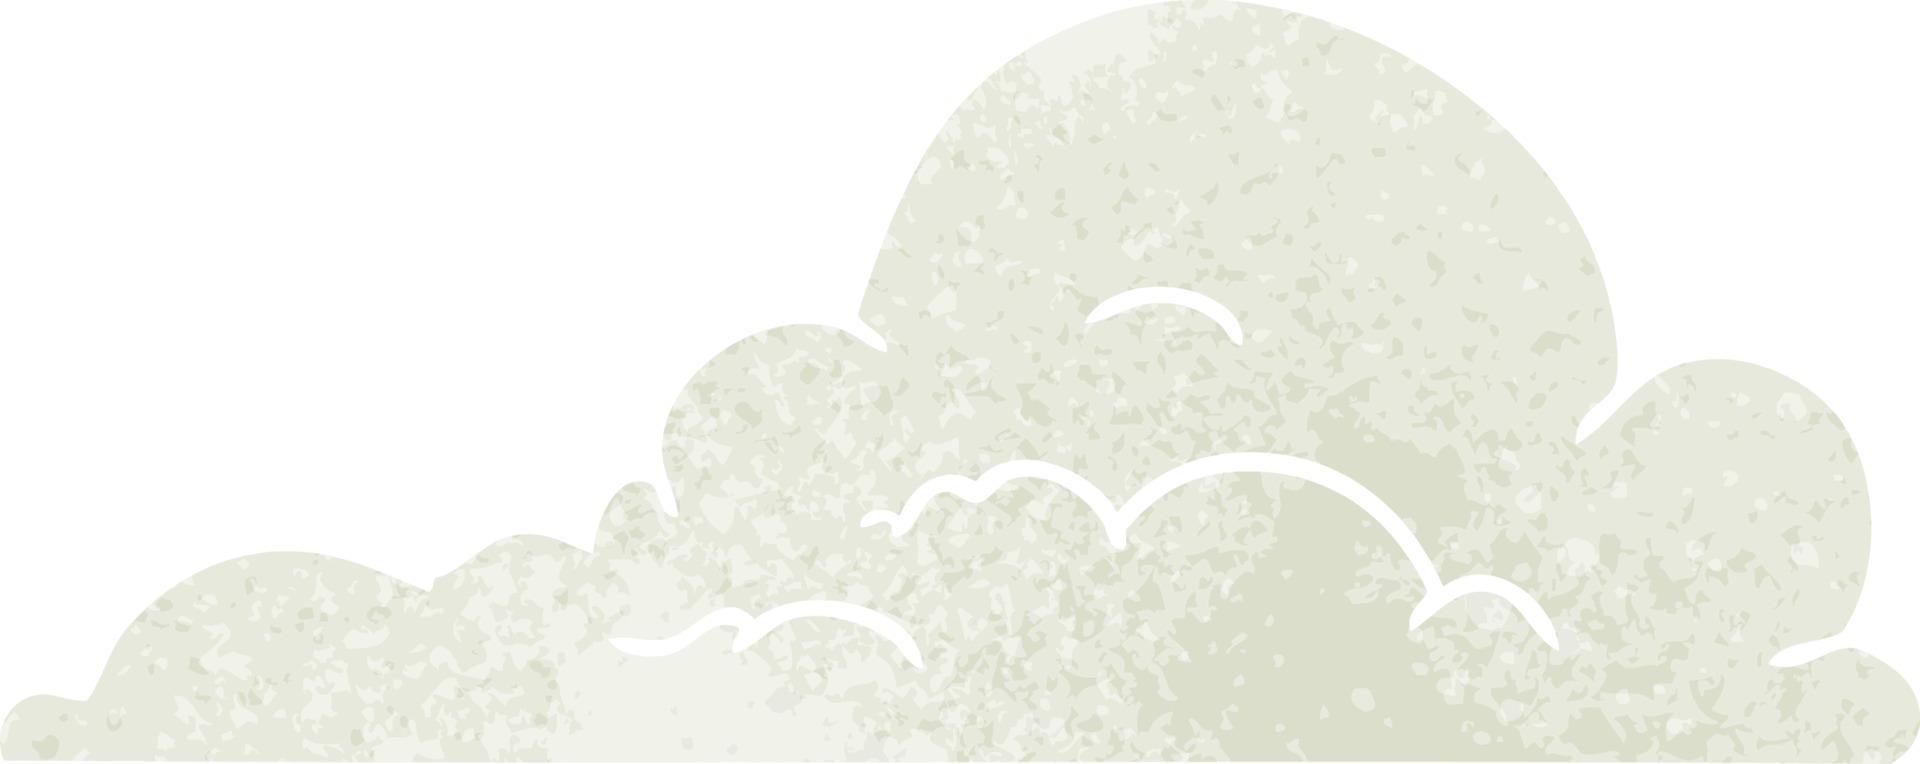 Retro-Cartoon-Doodle von weißen großen Wolken vektor